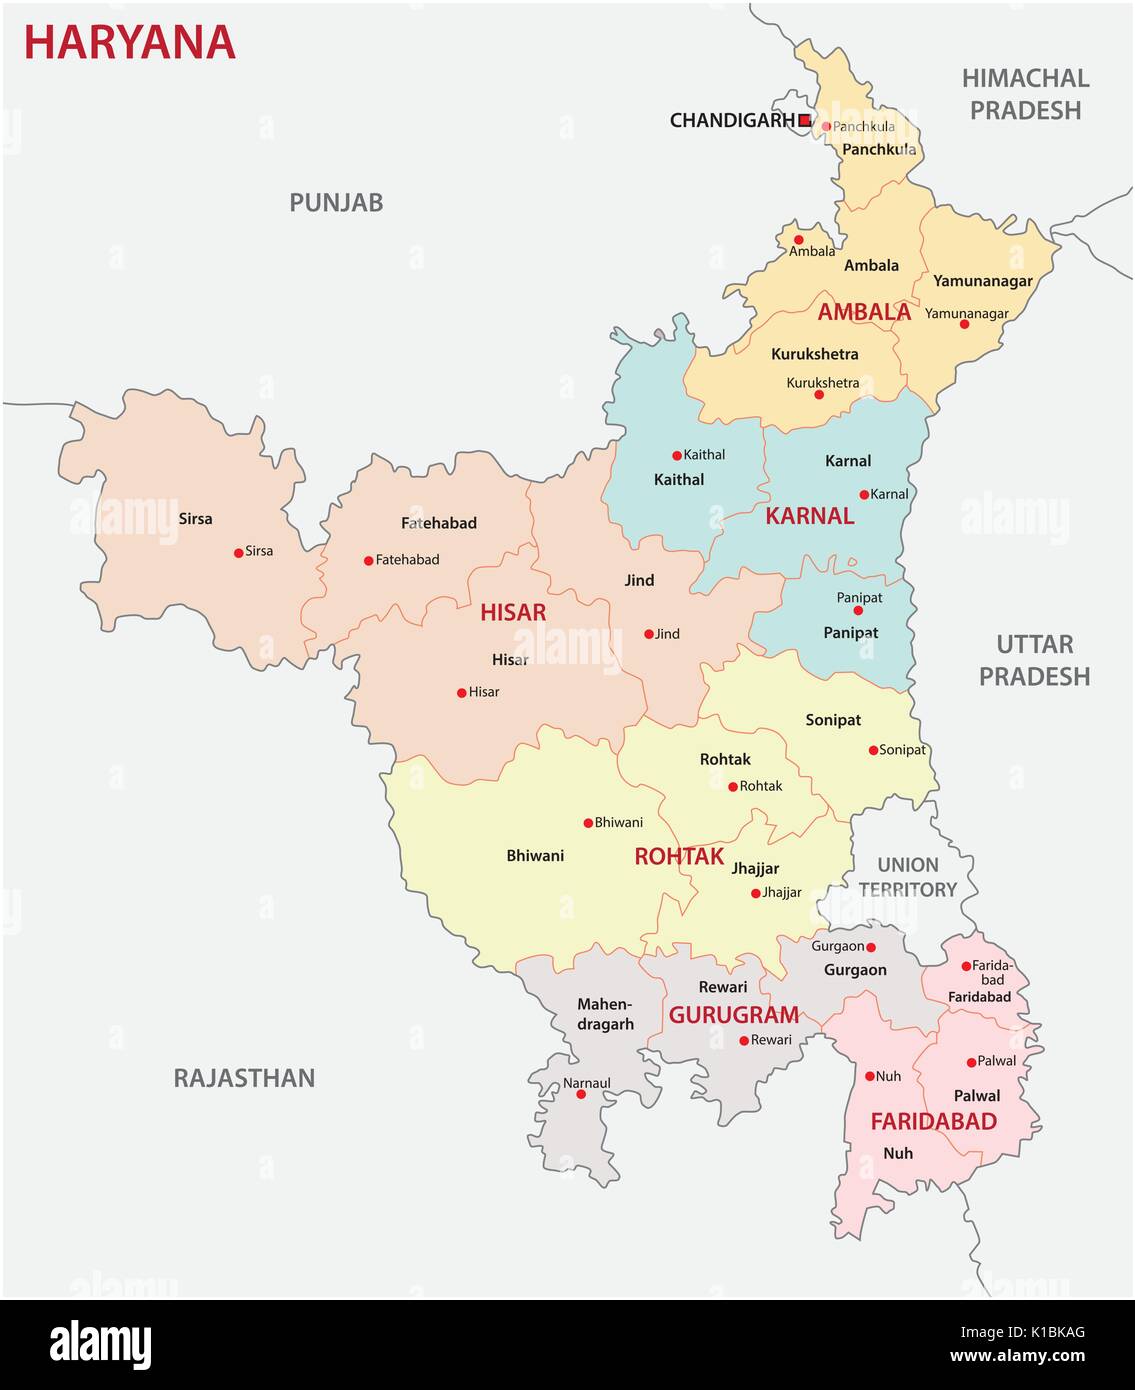 Haryana politica e amministrativa di mappa, India Illustrazione Vettoriale